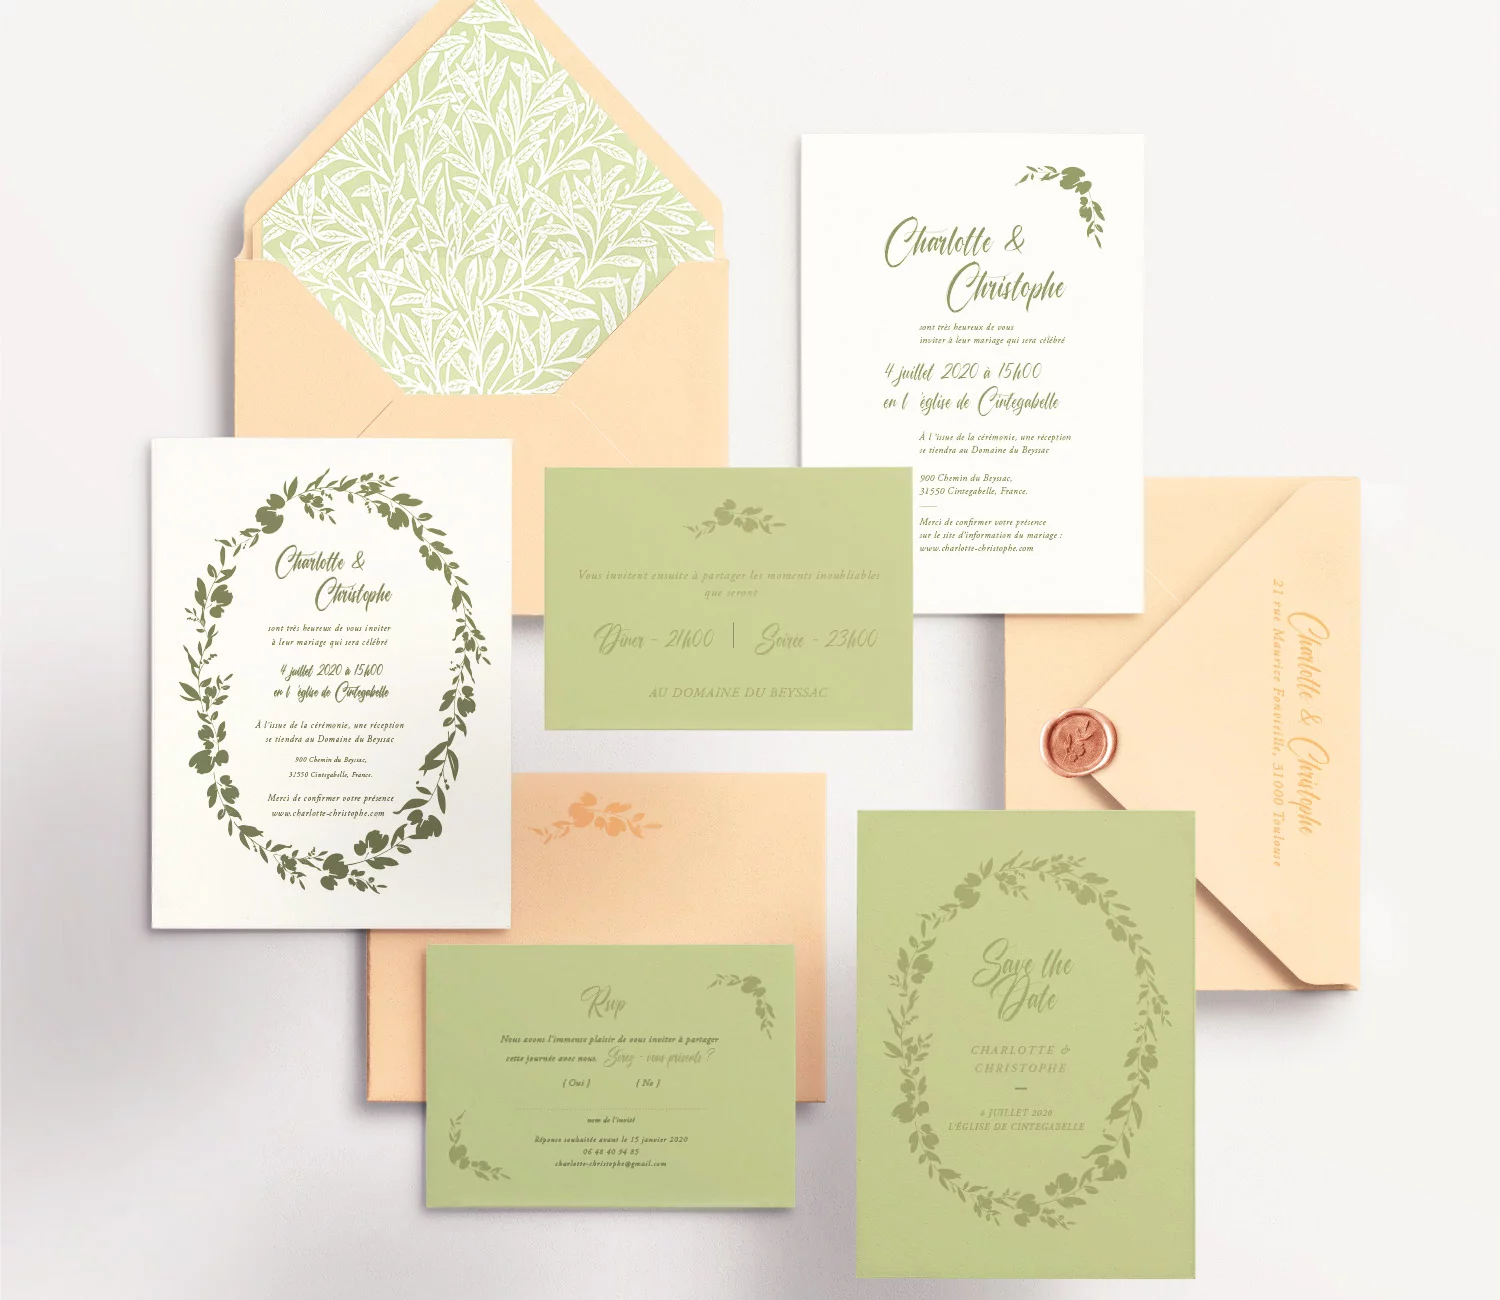 Une invitation de mariage romantique avec un design floral intemporel